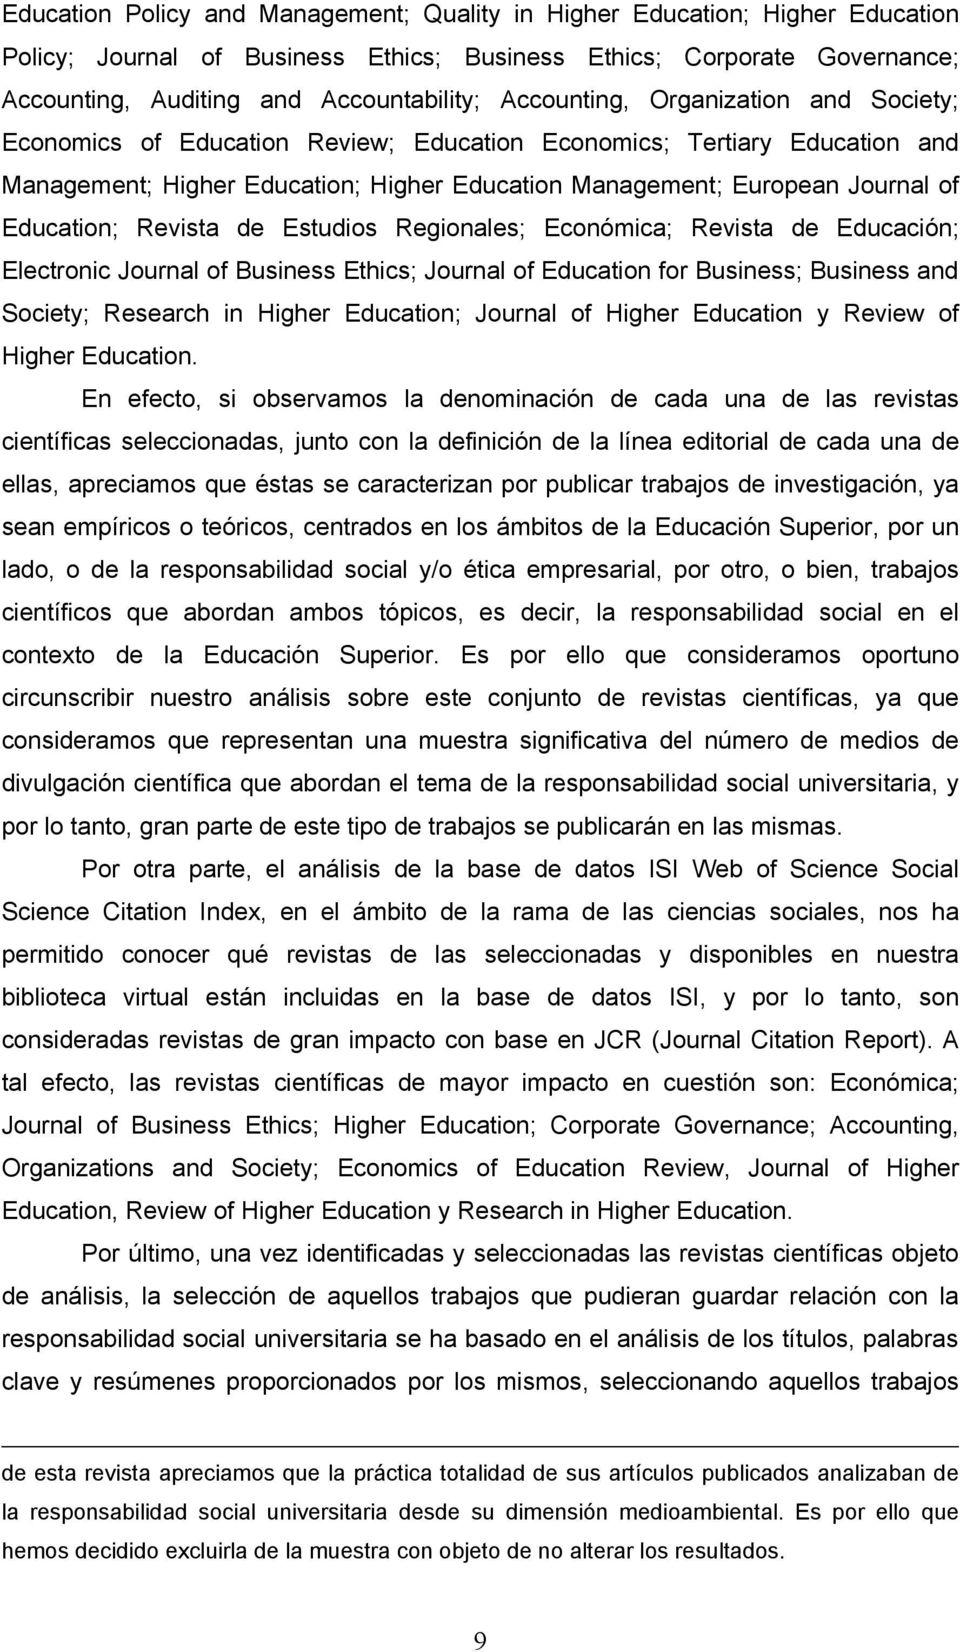 Education; Revista de Estudios Regionales; Económica; Revista de Educación; Electronic Journal of Business Ethics; Journal of Education for Business; Business and Society; Research in Higher